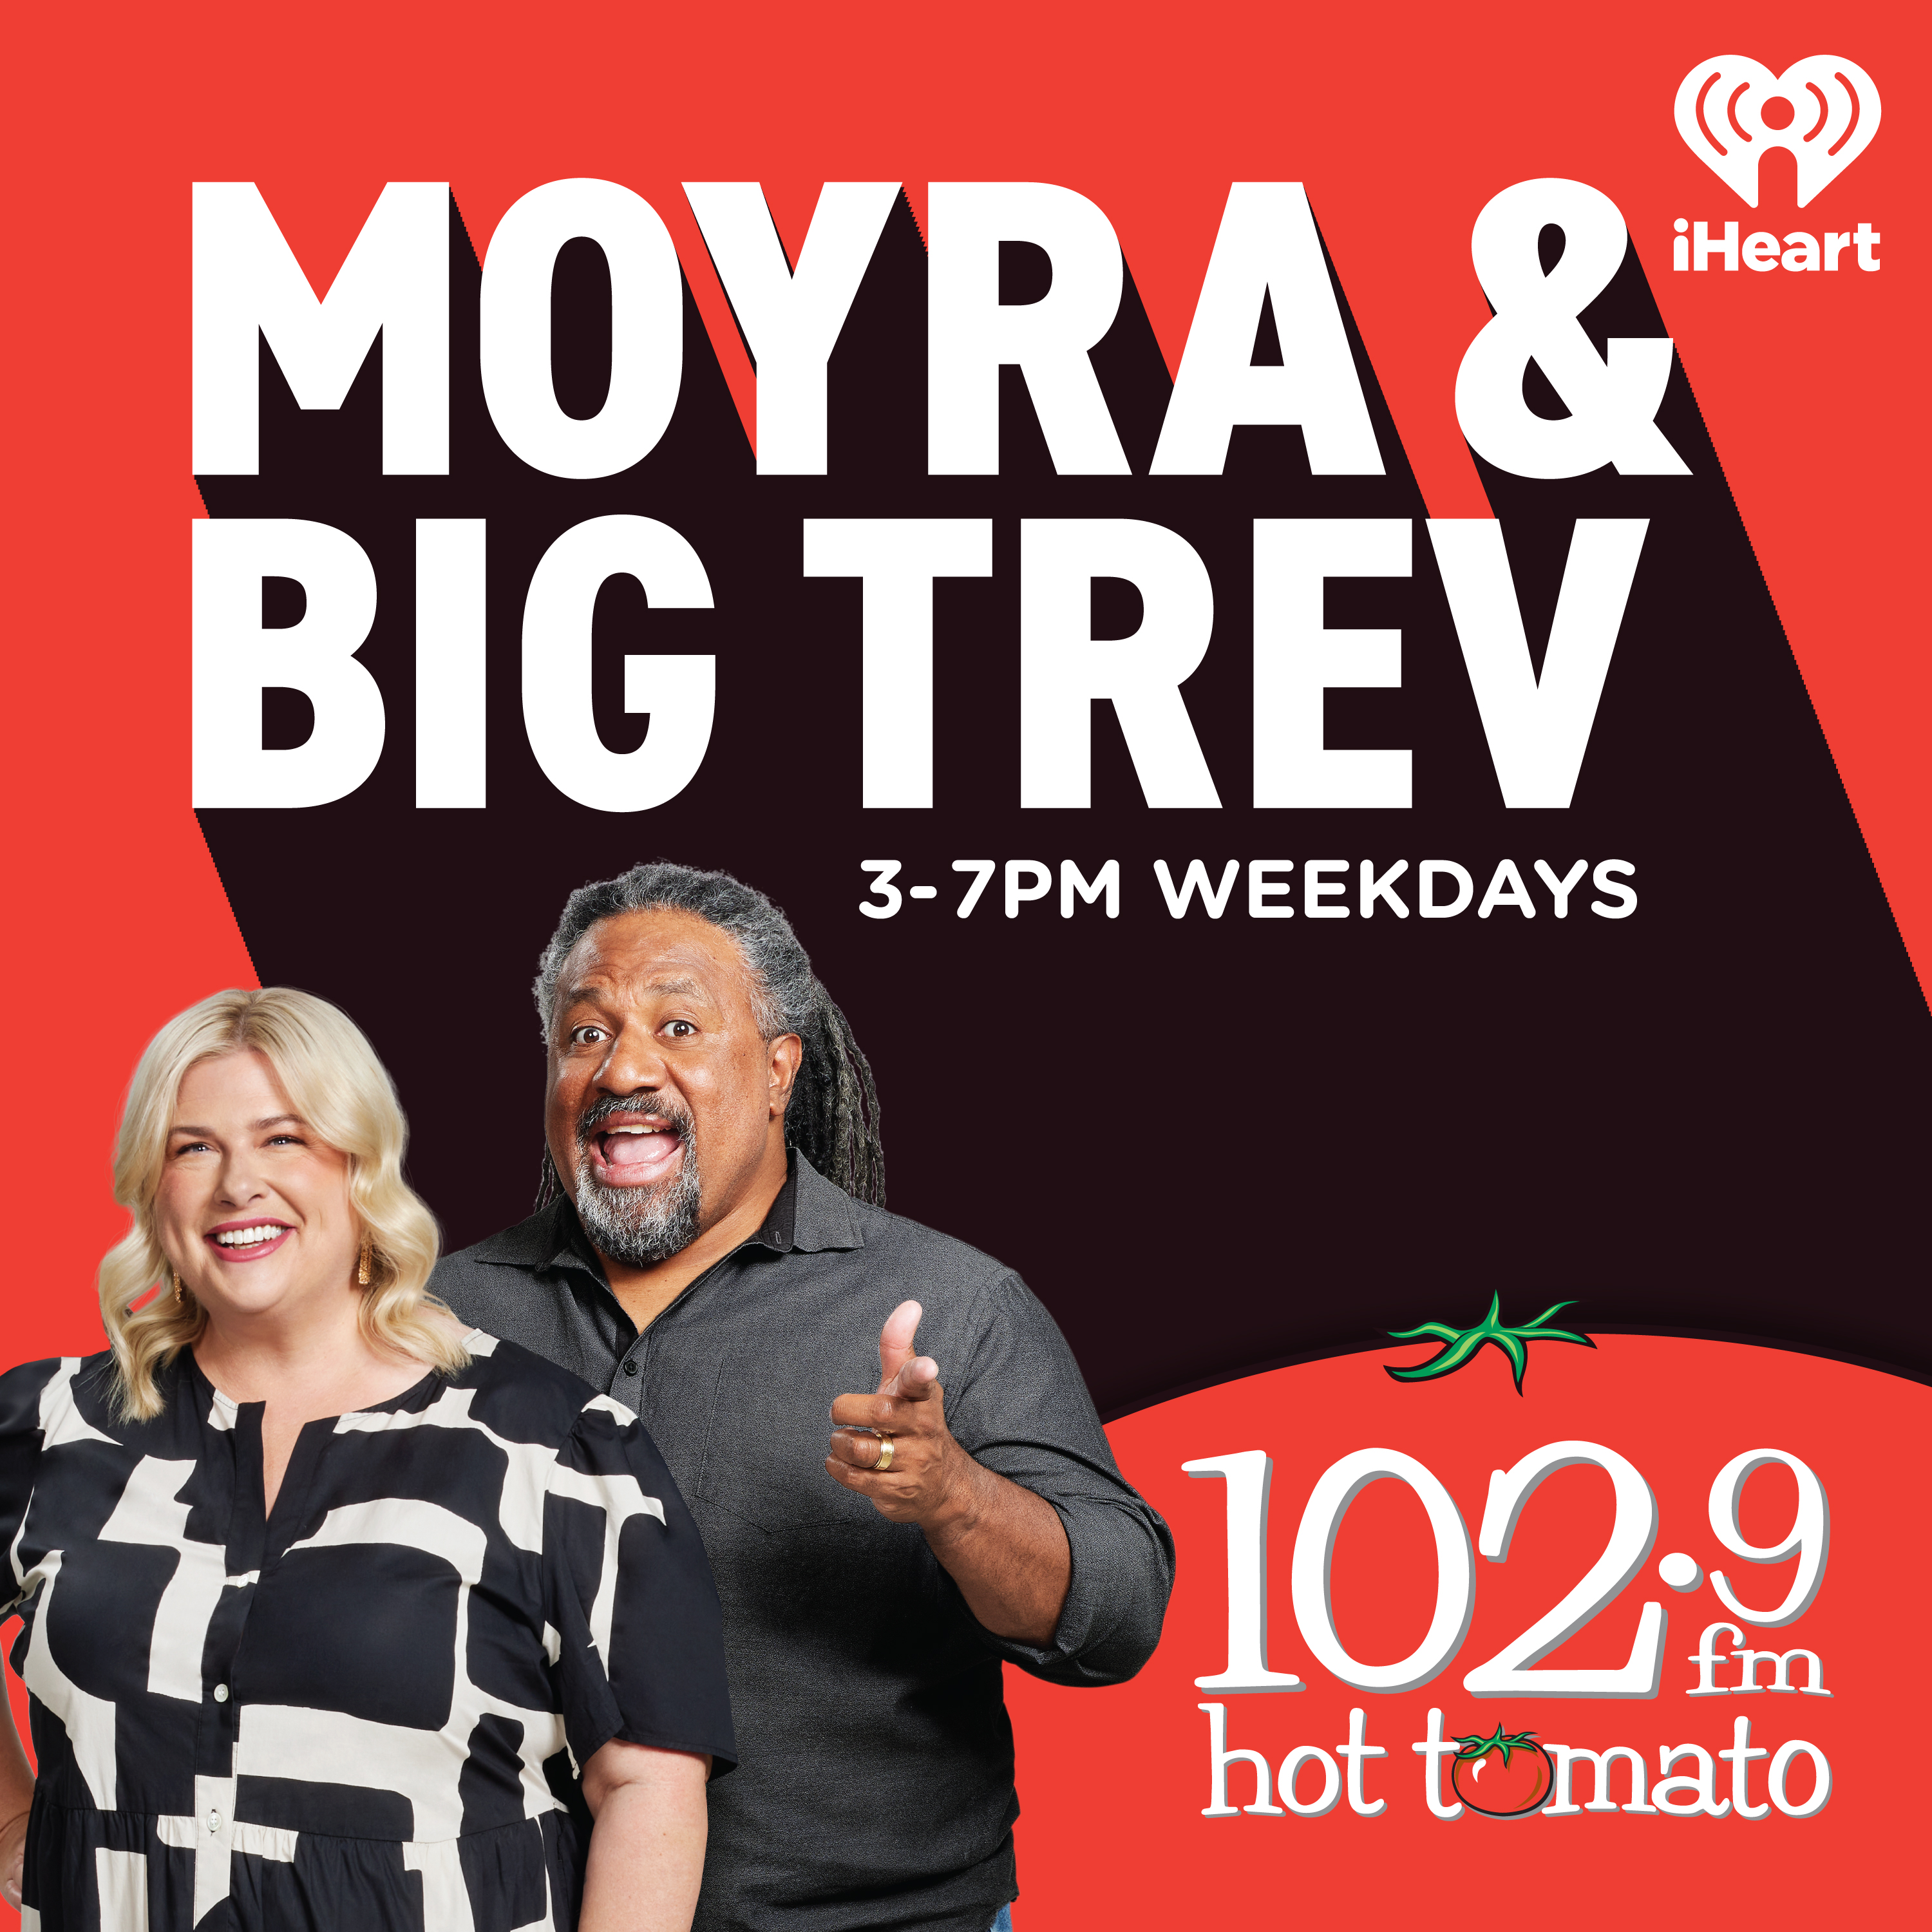 Moyra and Big Trev's Did You Know?